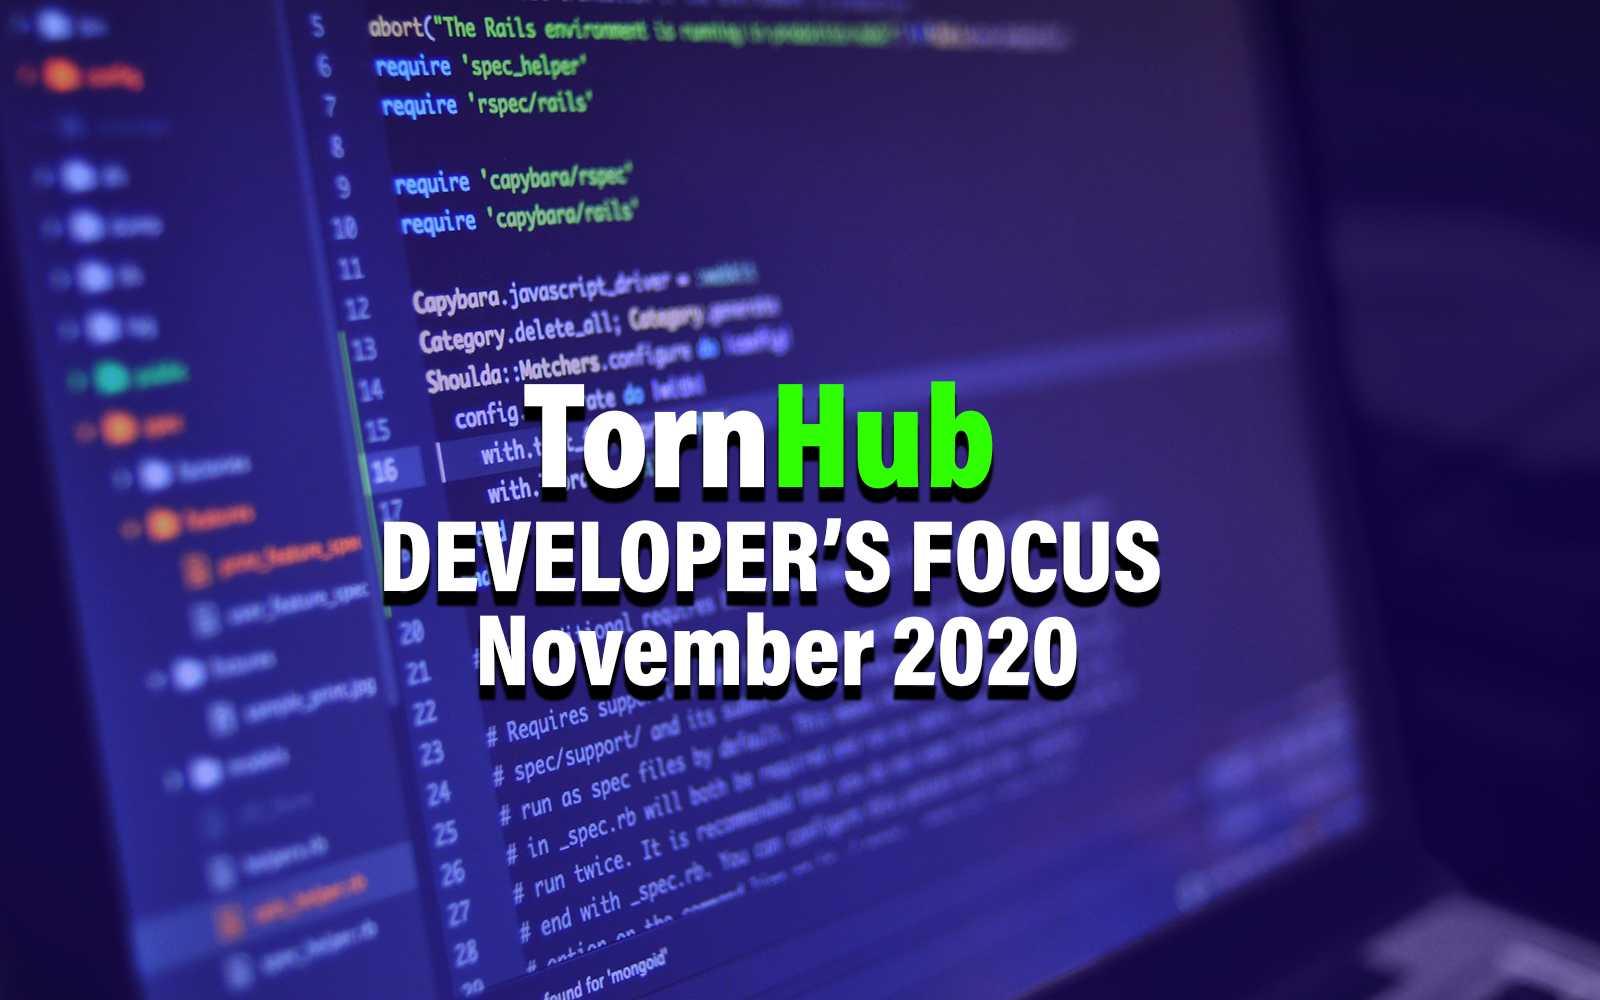 Developers Focus November 2020 Explained